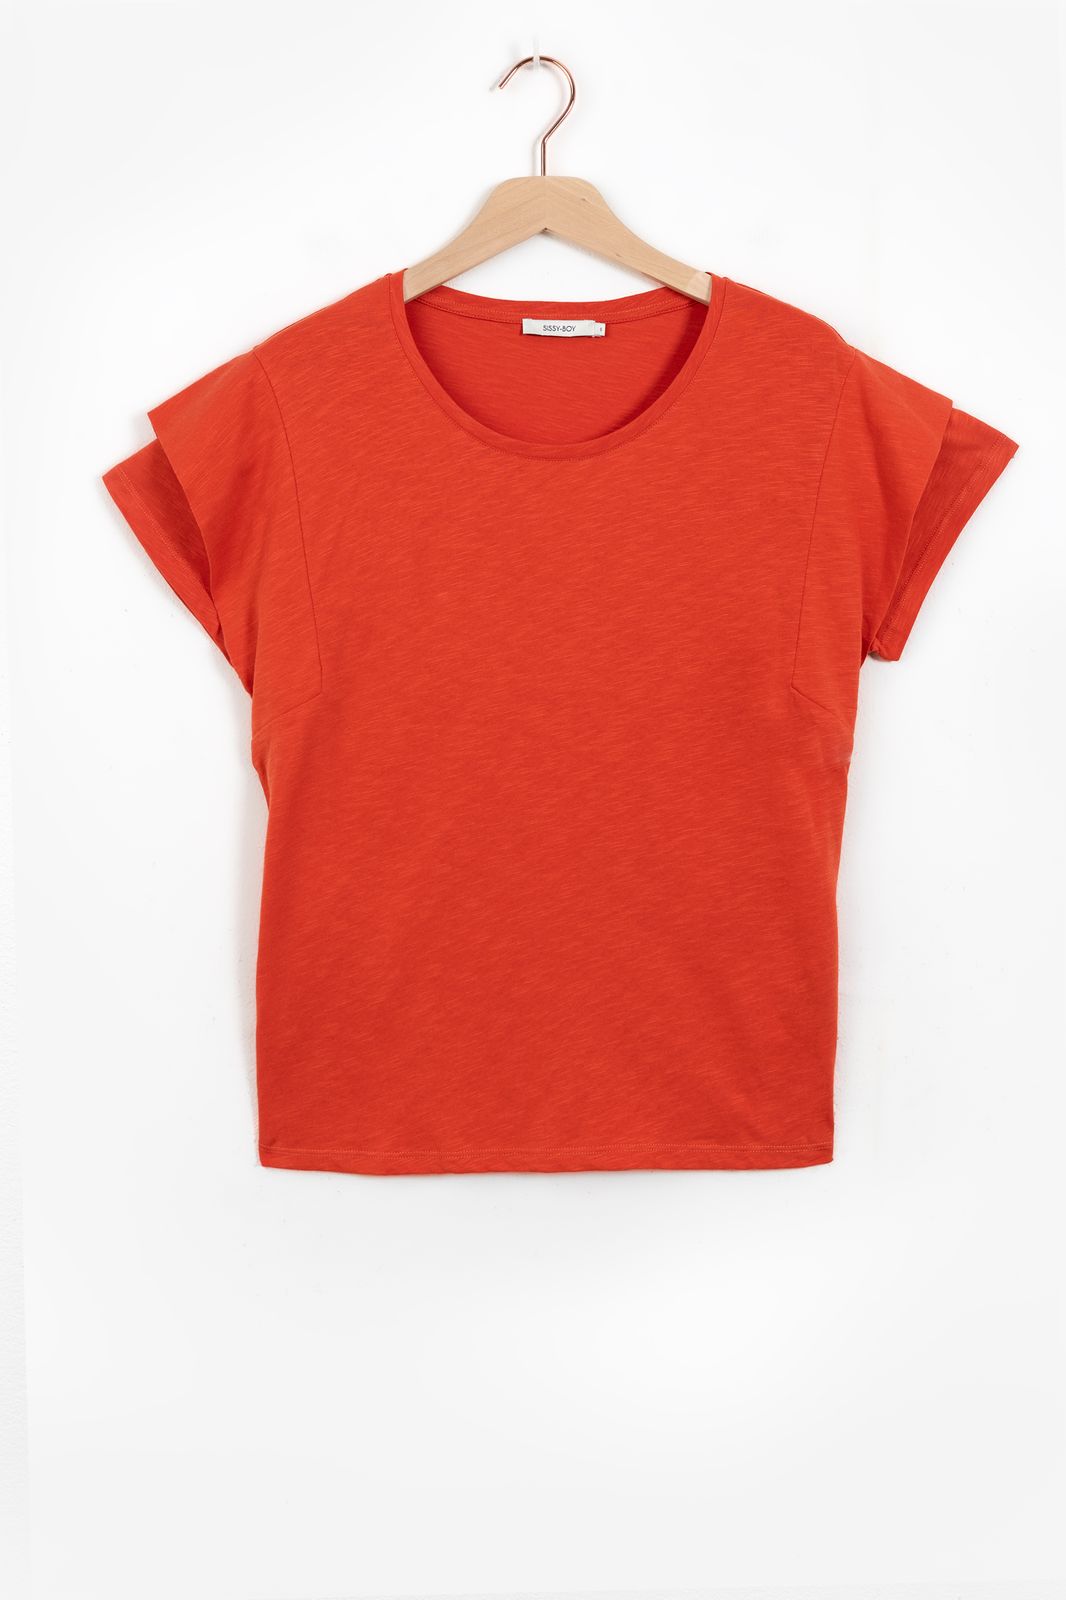 T-Shirt mit Schulter-Details - orange